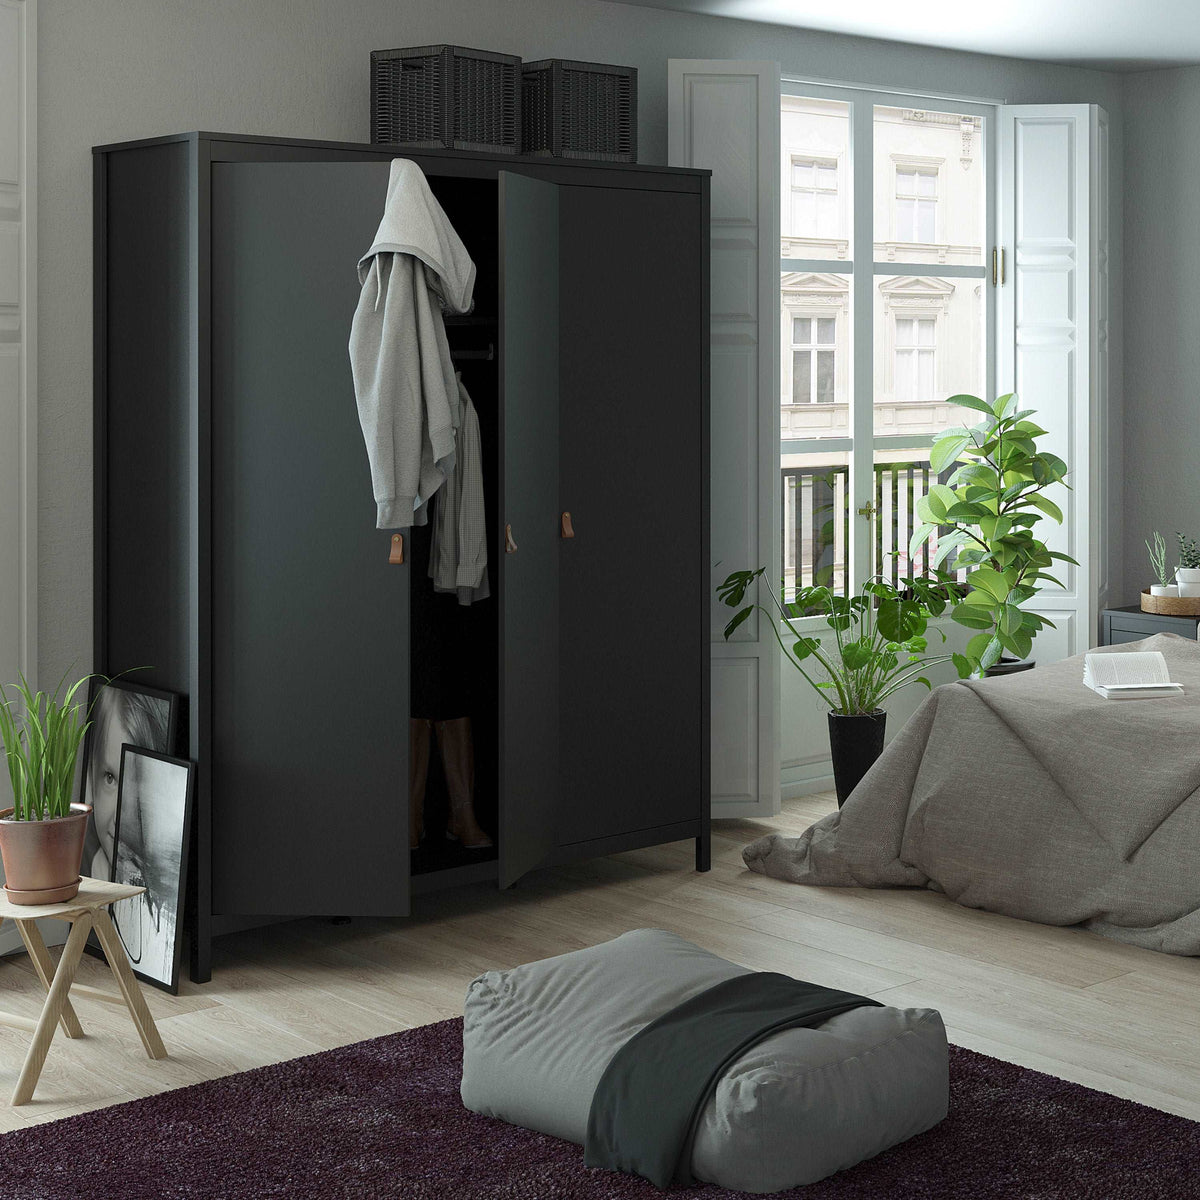 Barcelona Wardrobe with 3 Doors in Matt Black Furniture To Go Ltd